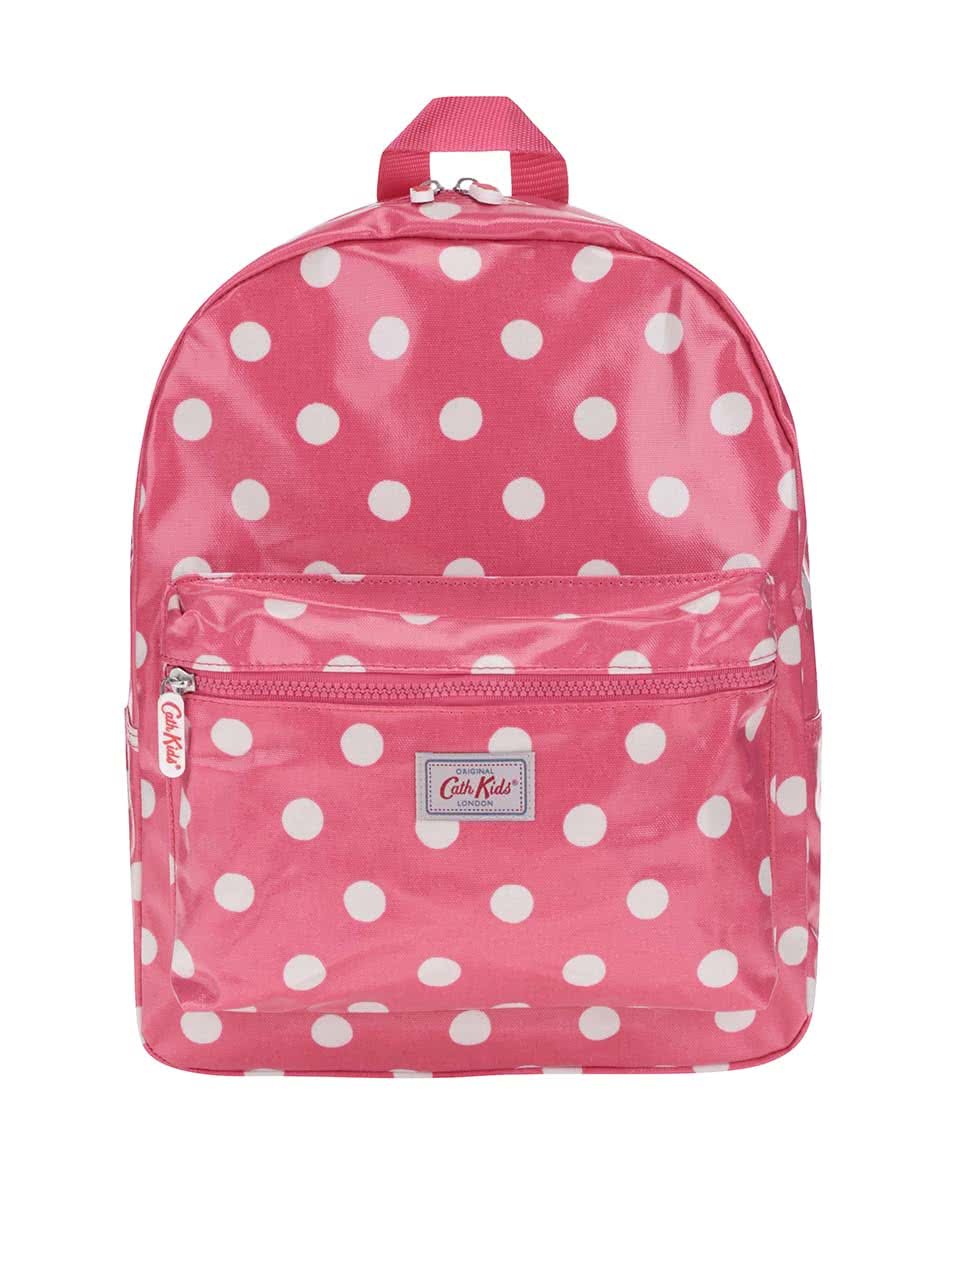 Růžový dívčí batoh s bílými puntíky Cath Kidston